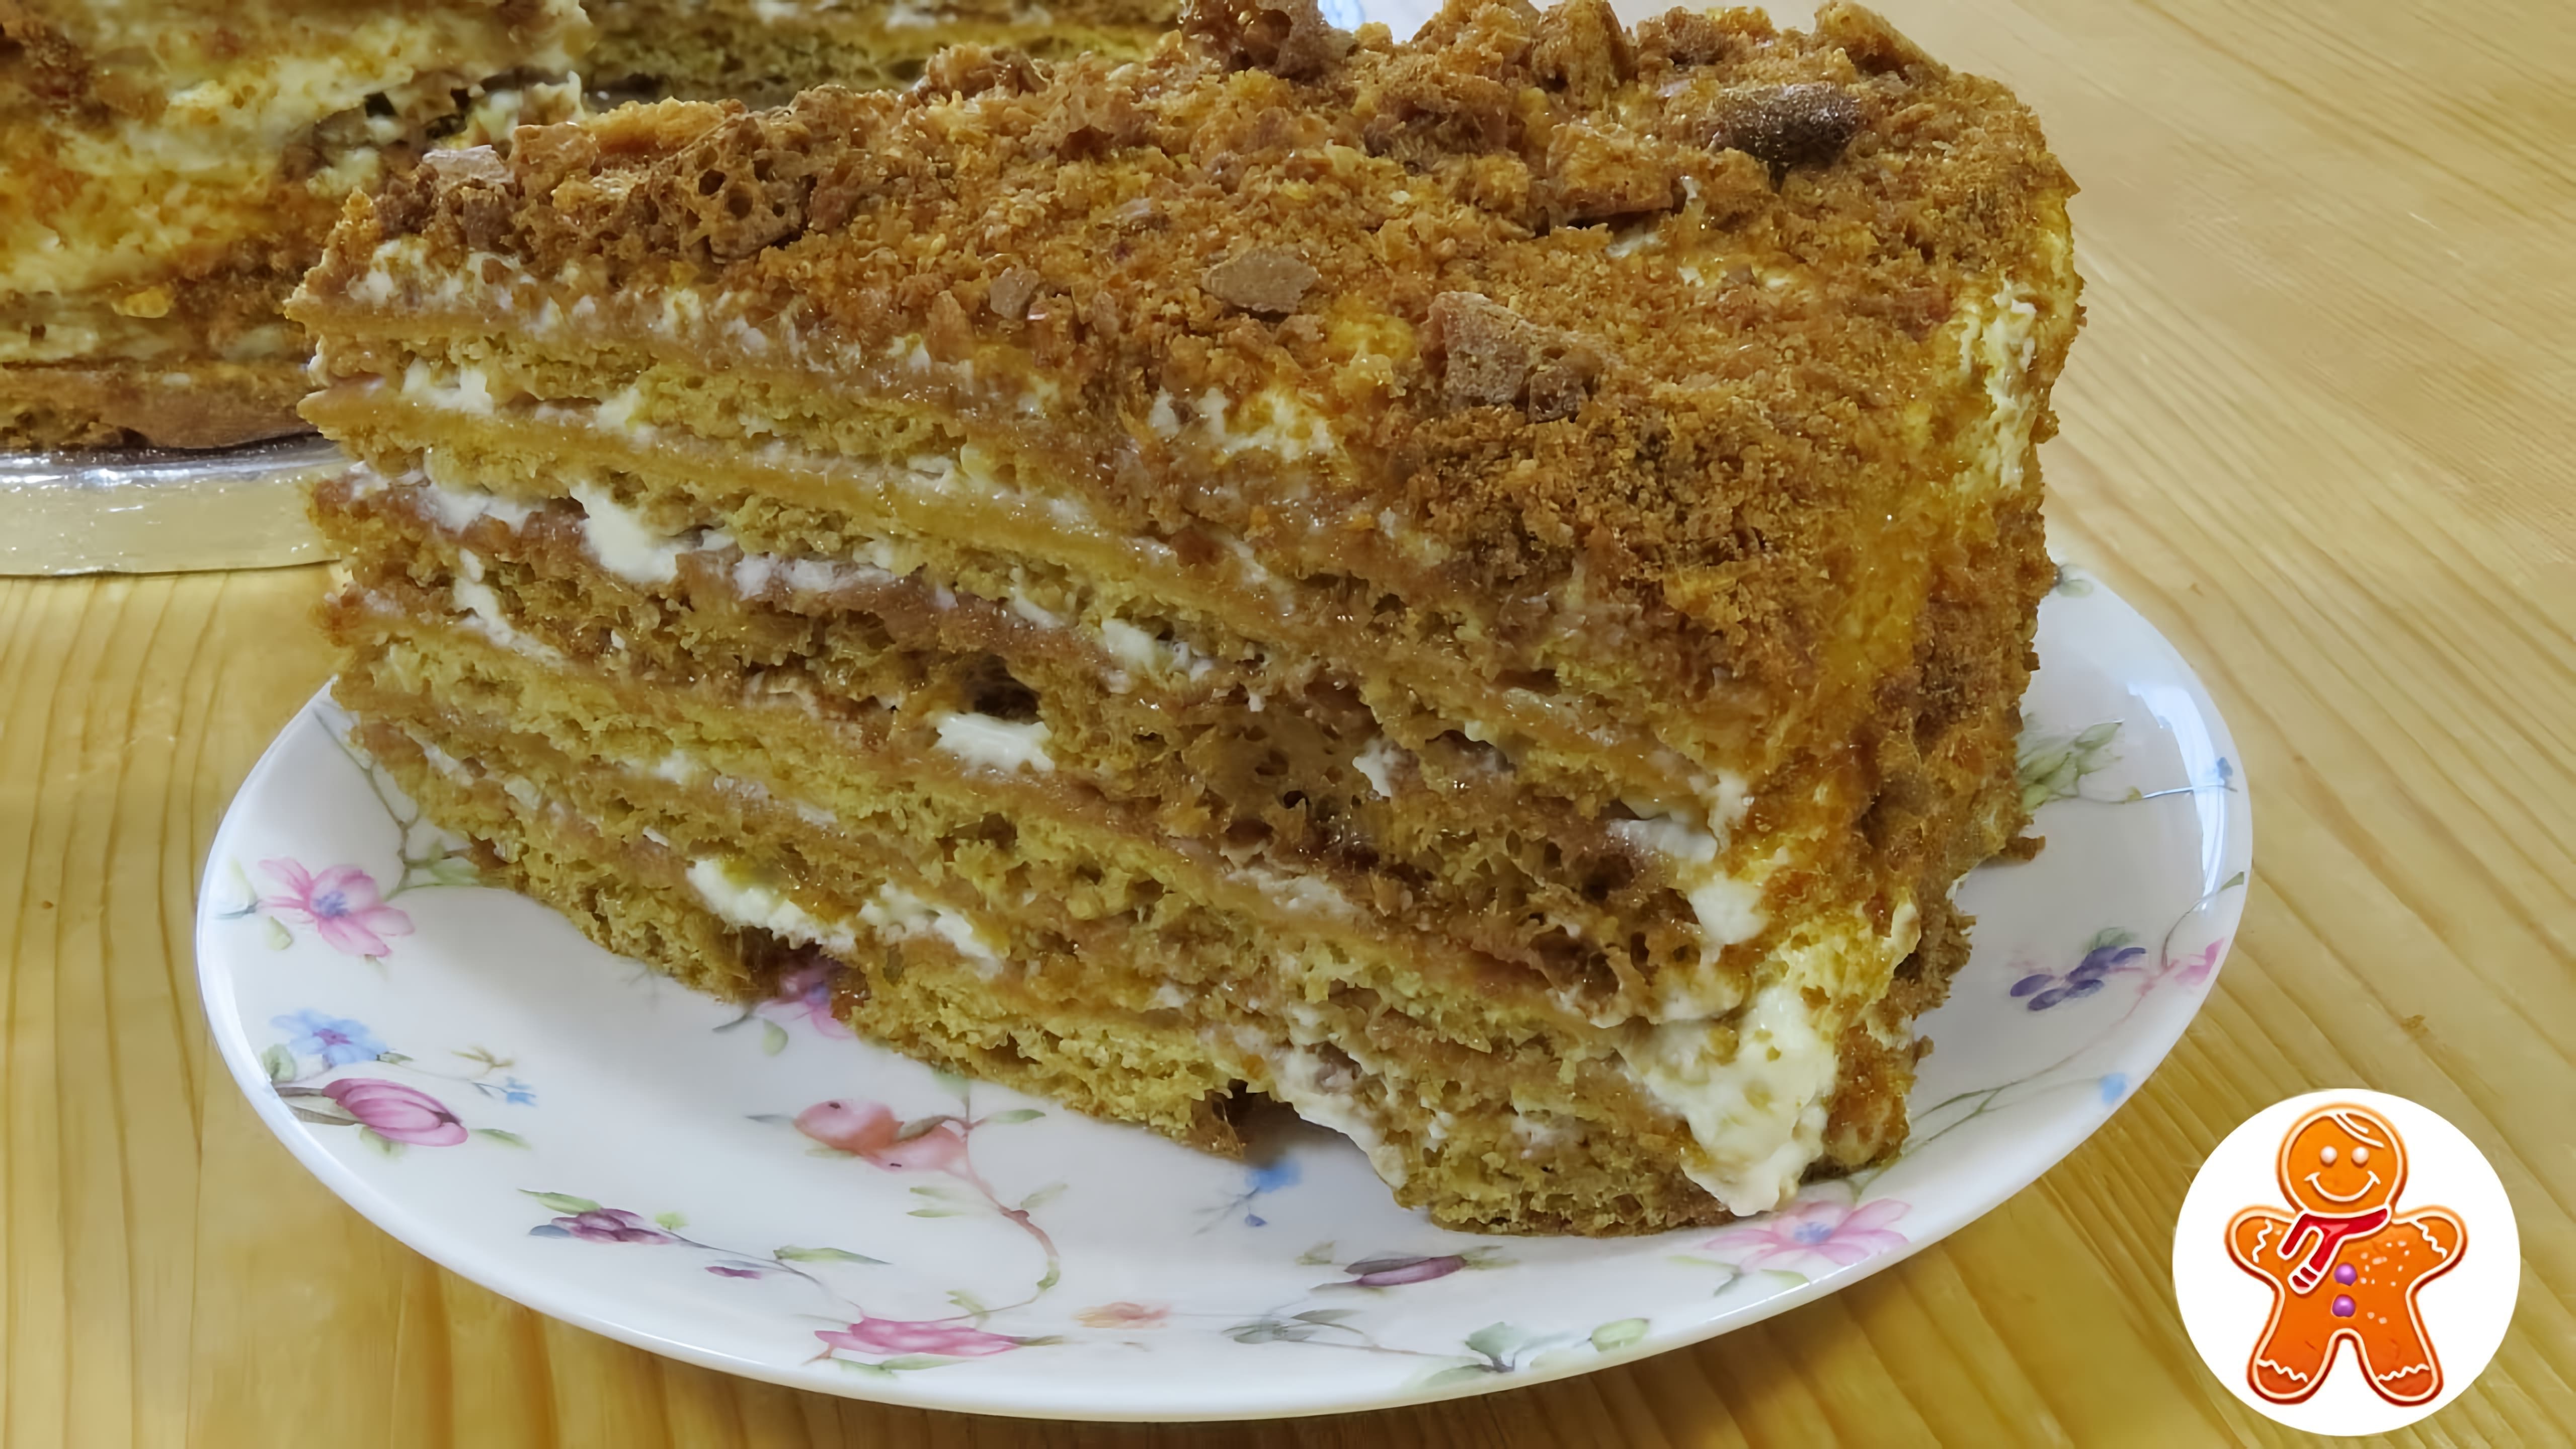 В этом видео демонстрируется рецепт приготовления медового торта "Посольский"